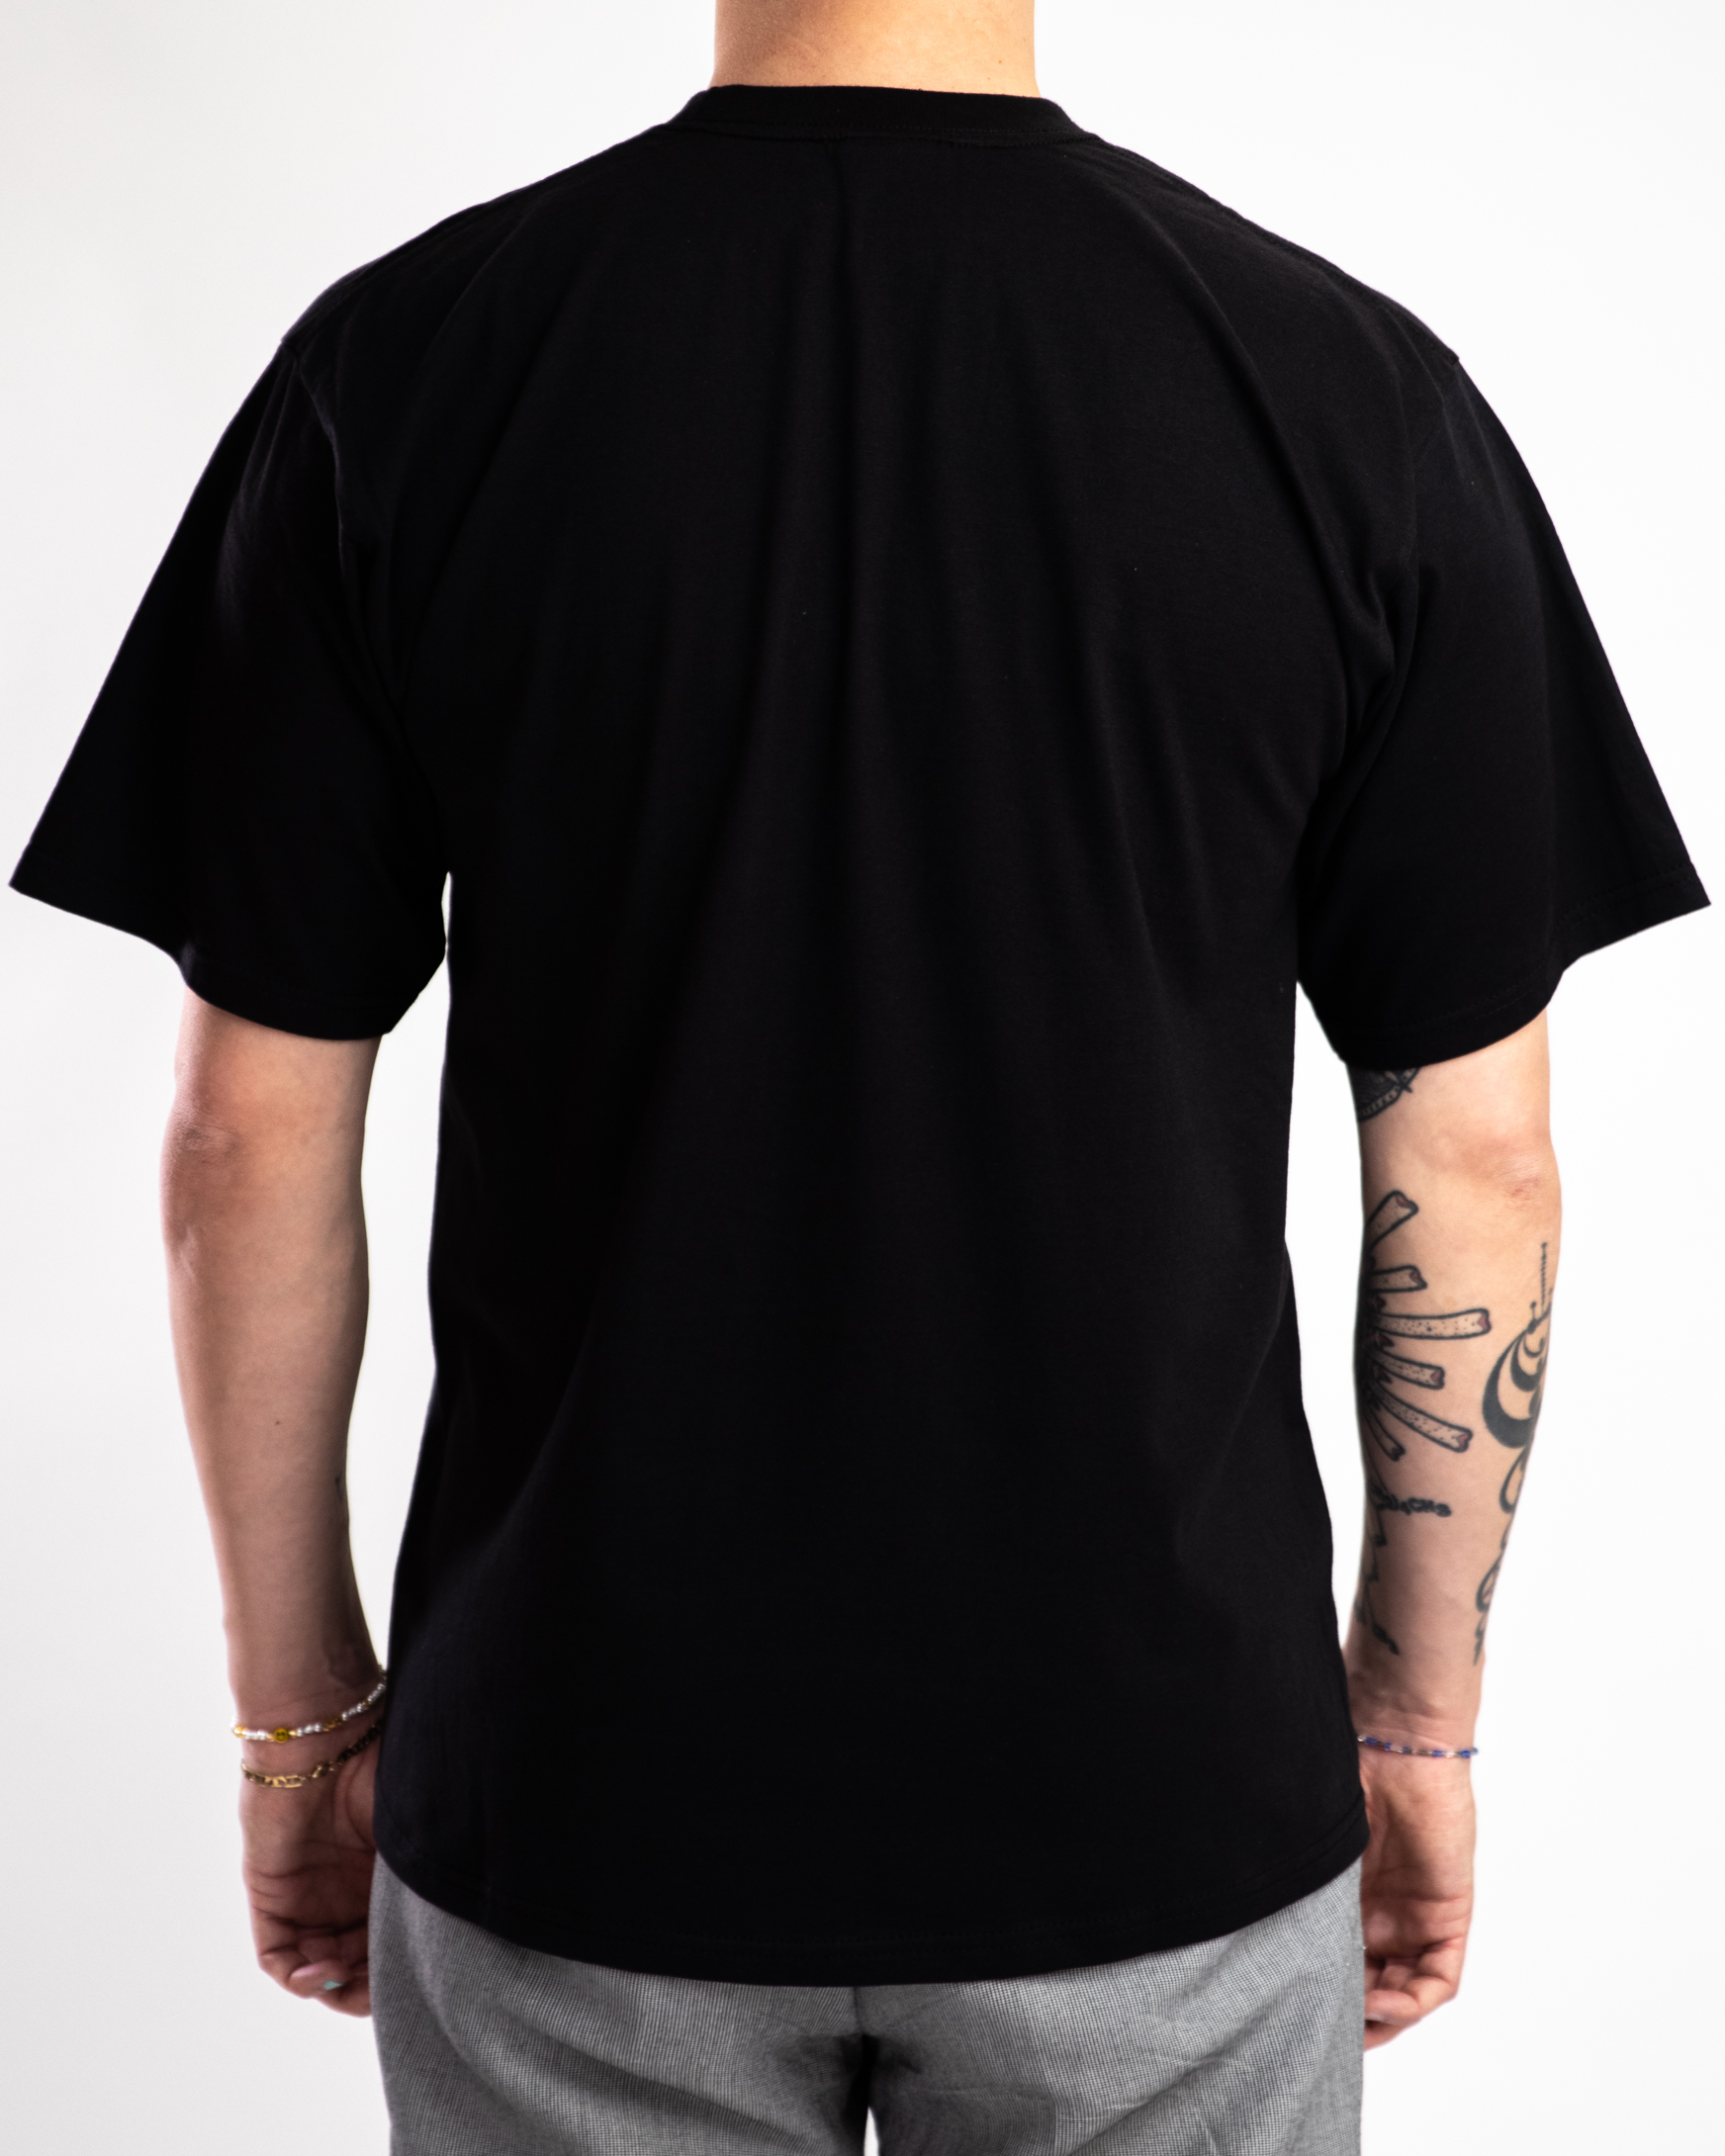 Wilthener Goldkrone T-Shirt schwarz